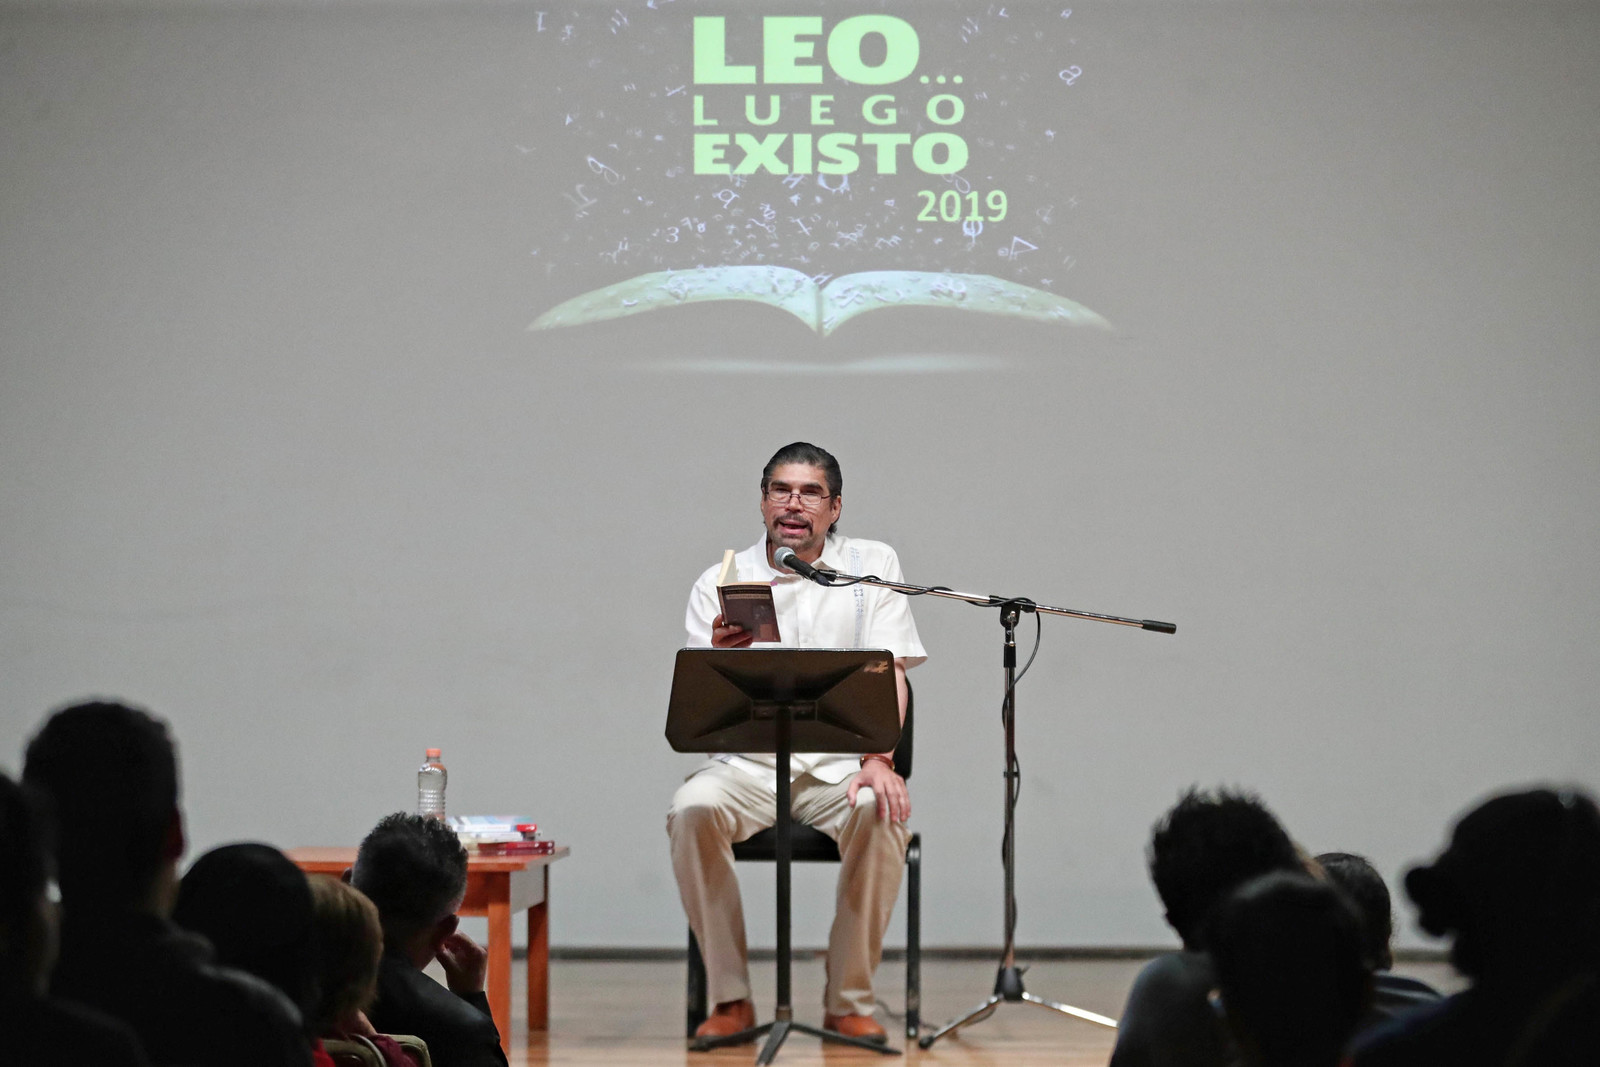 Apoya la lectura. Alberto Estrella participó ayer en el ciclo Leo luego existo en el Palacio de Bellas Artes. (ARCHIVO)